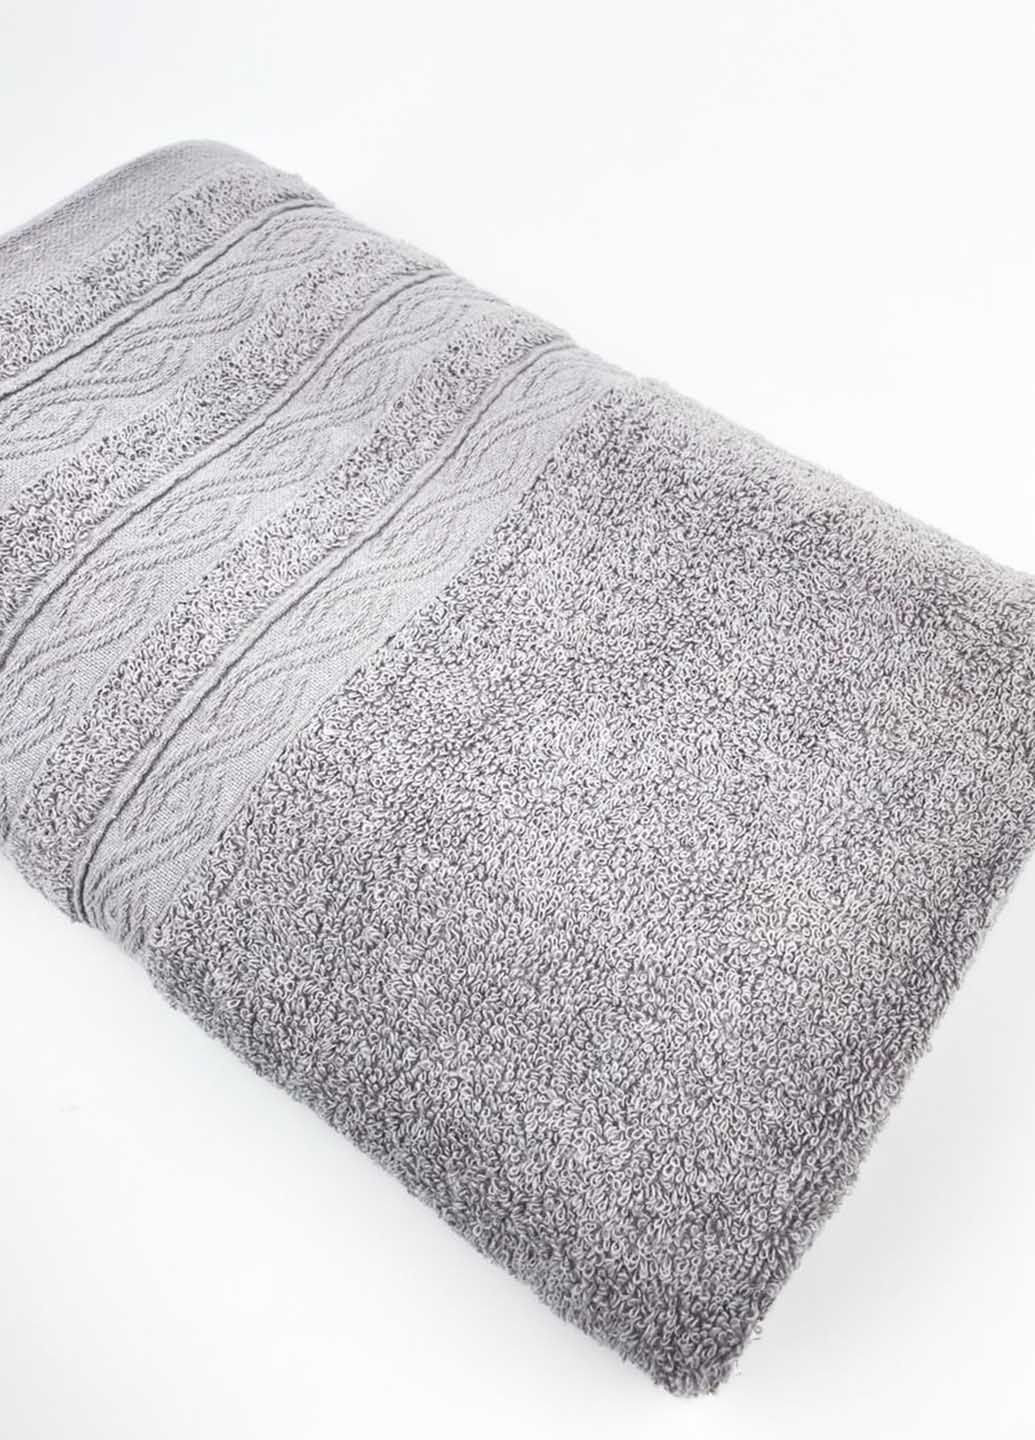 Homedec полотенце банное махровое 140х70 см абстрактный серый производство - Турция